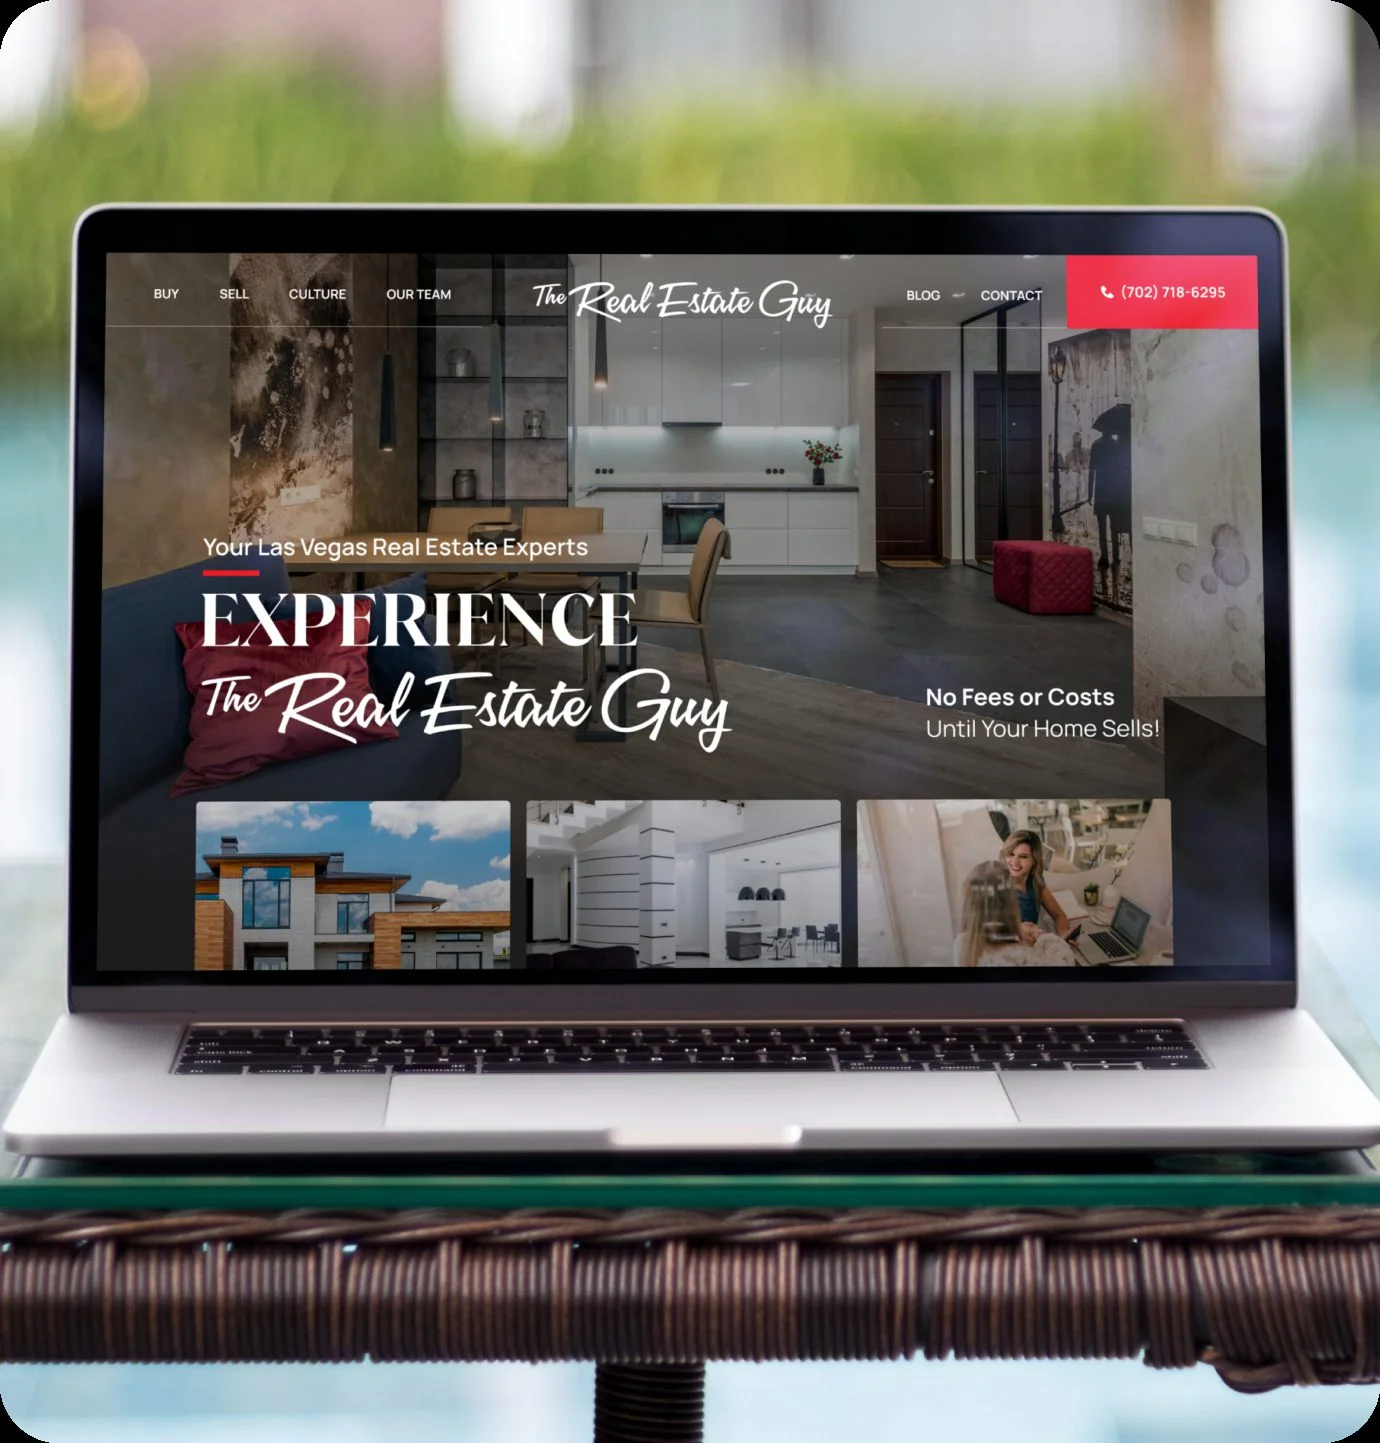 The real estate guy web design mockup on laptop